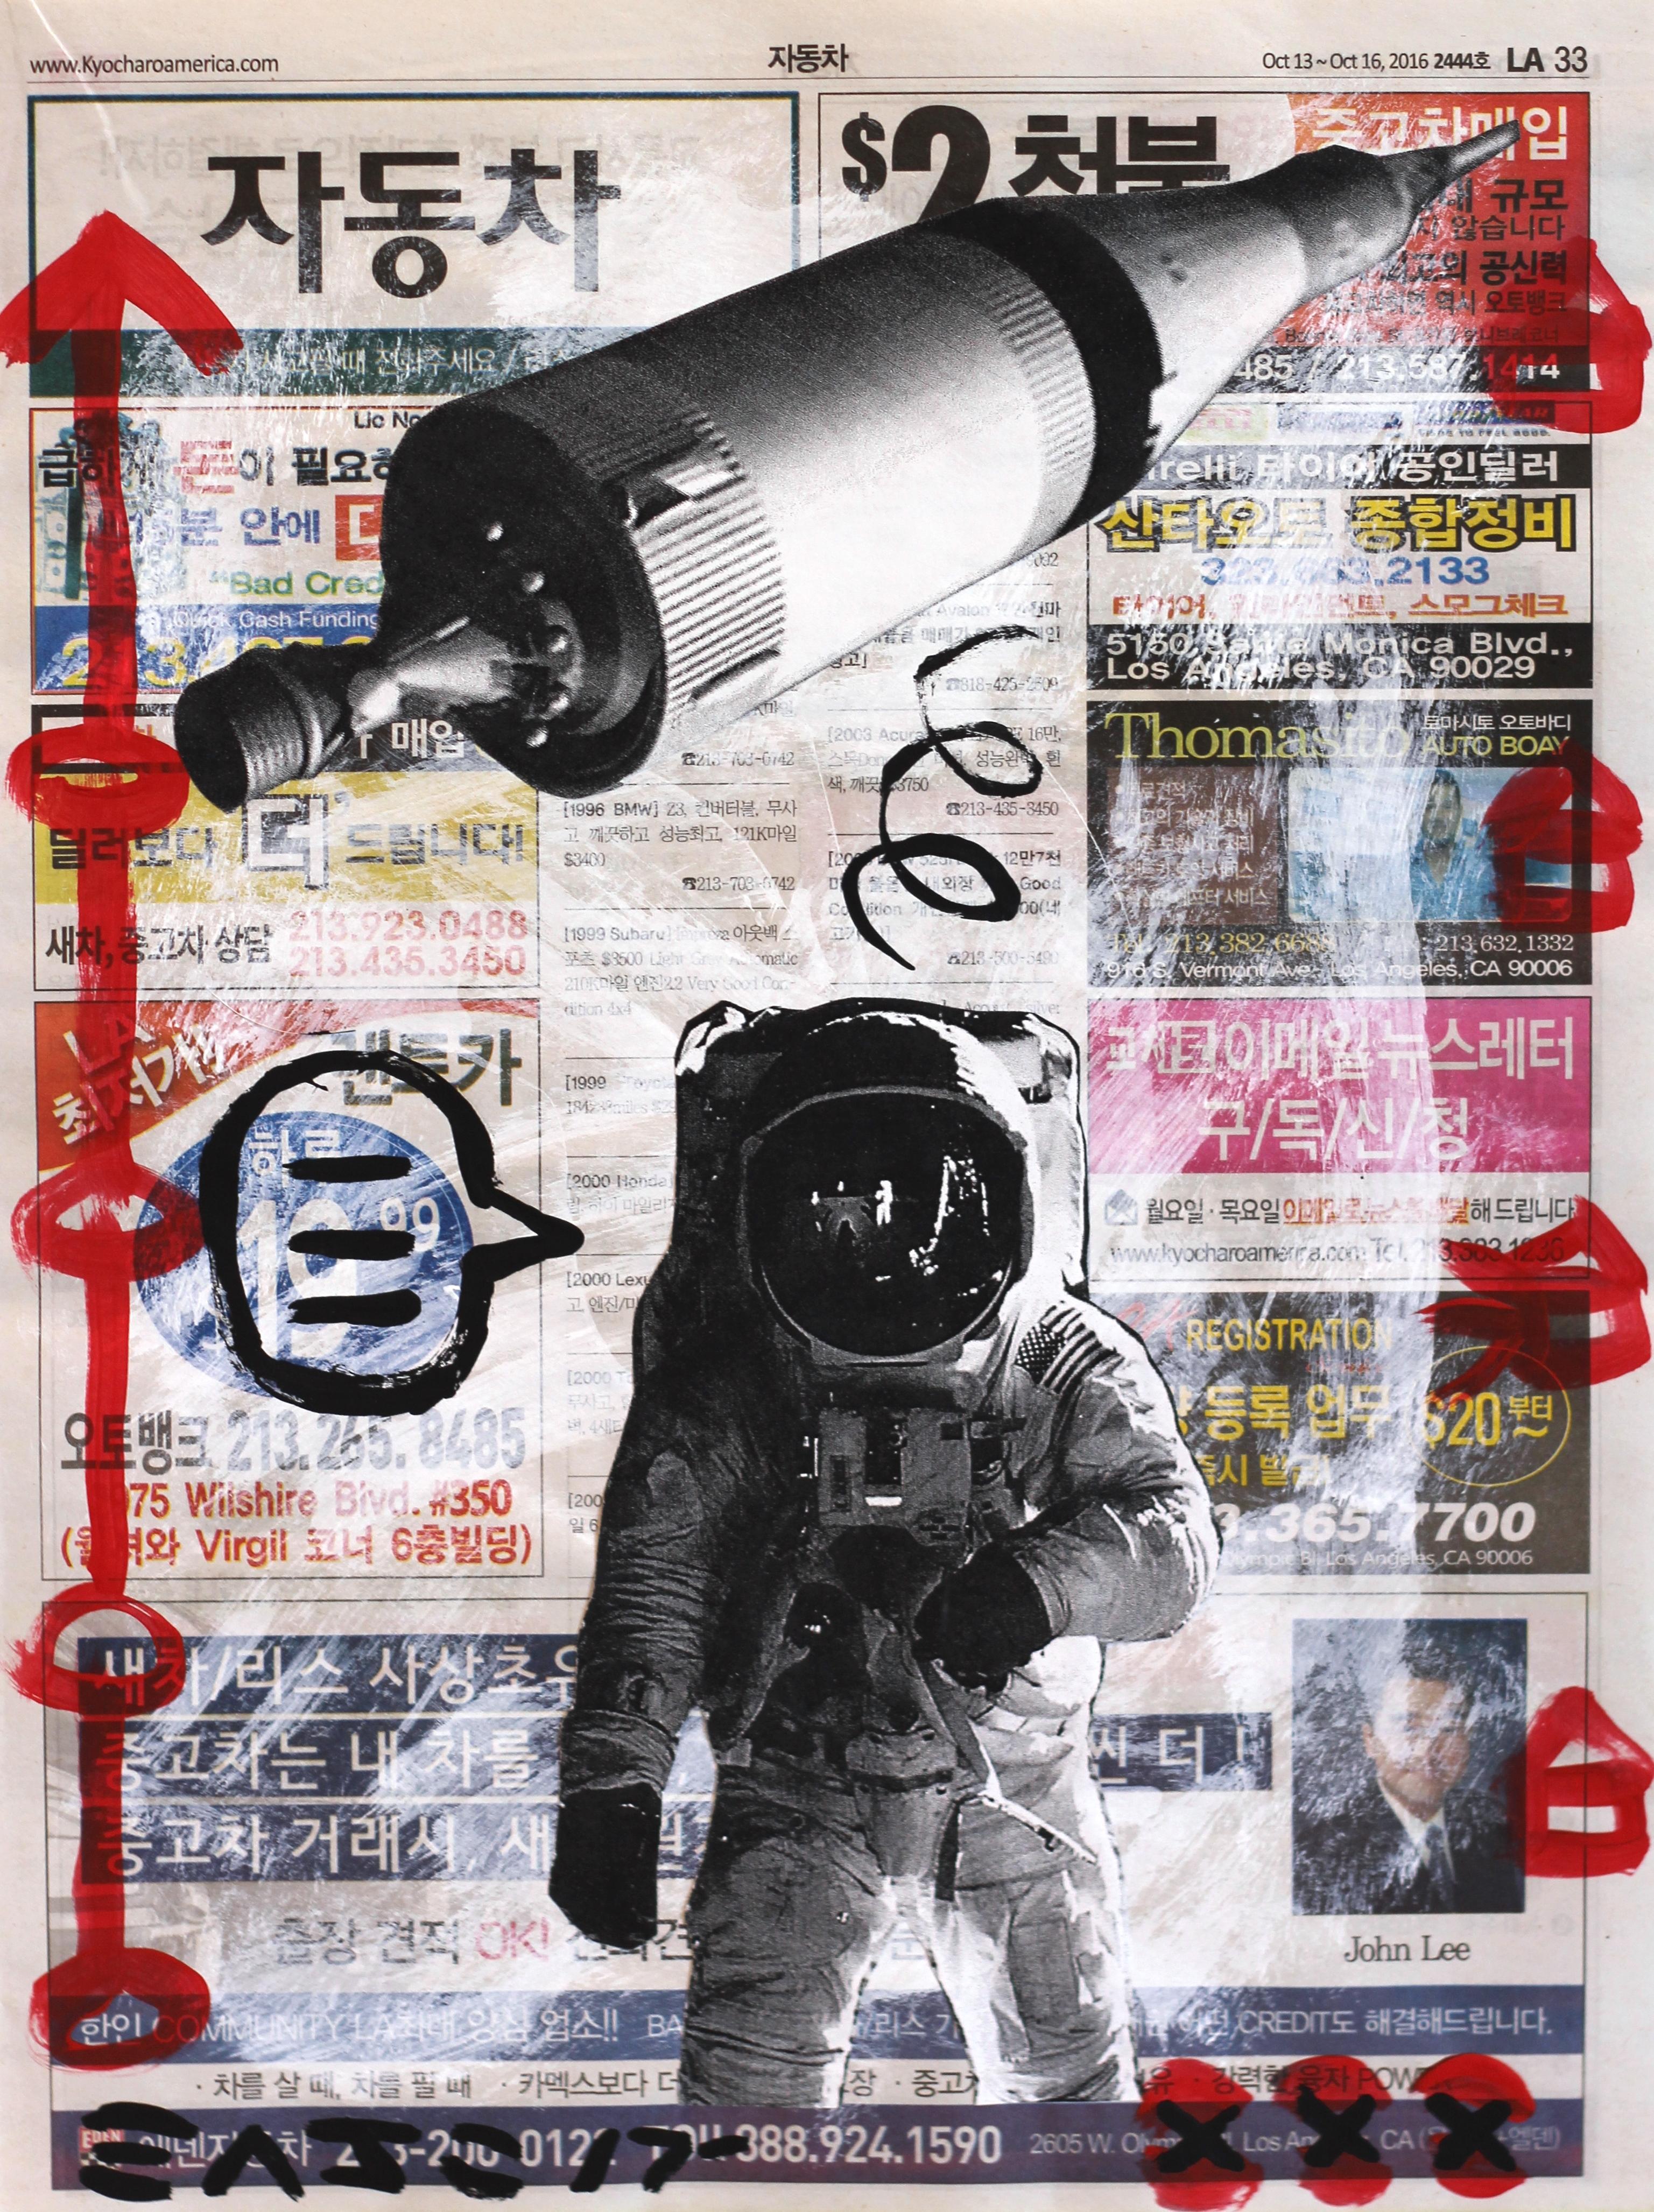 Astronaut Dreams - Mixed Media Art by Gary John